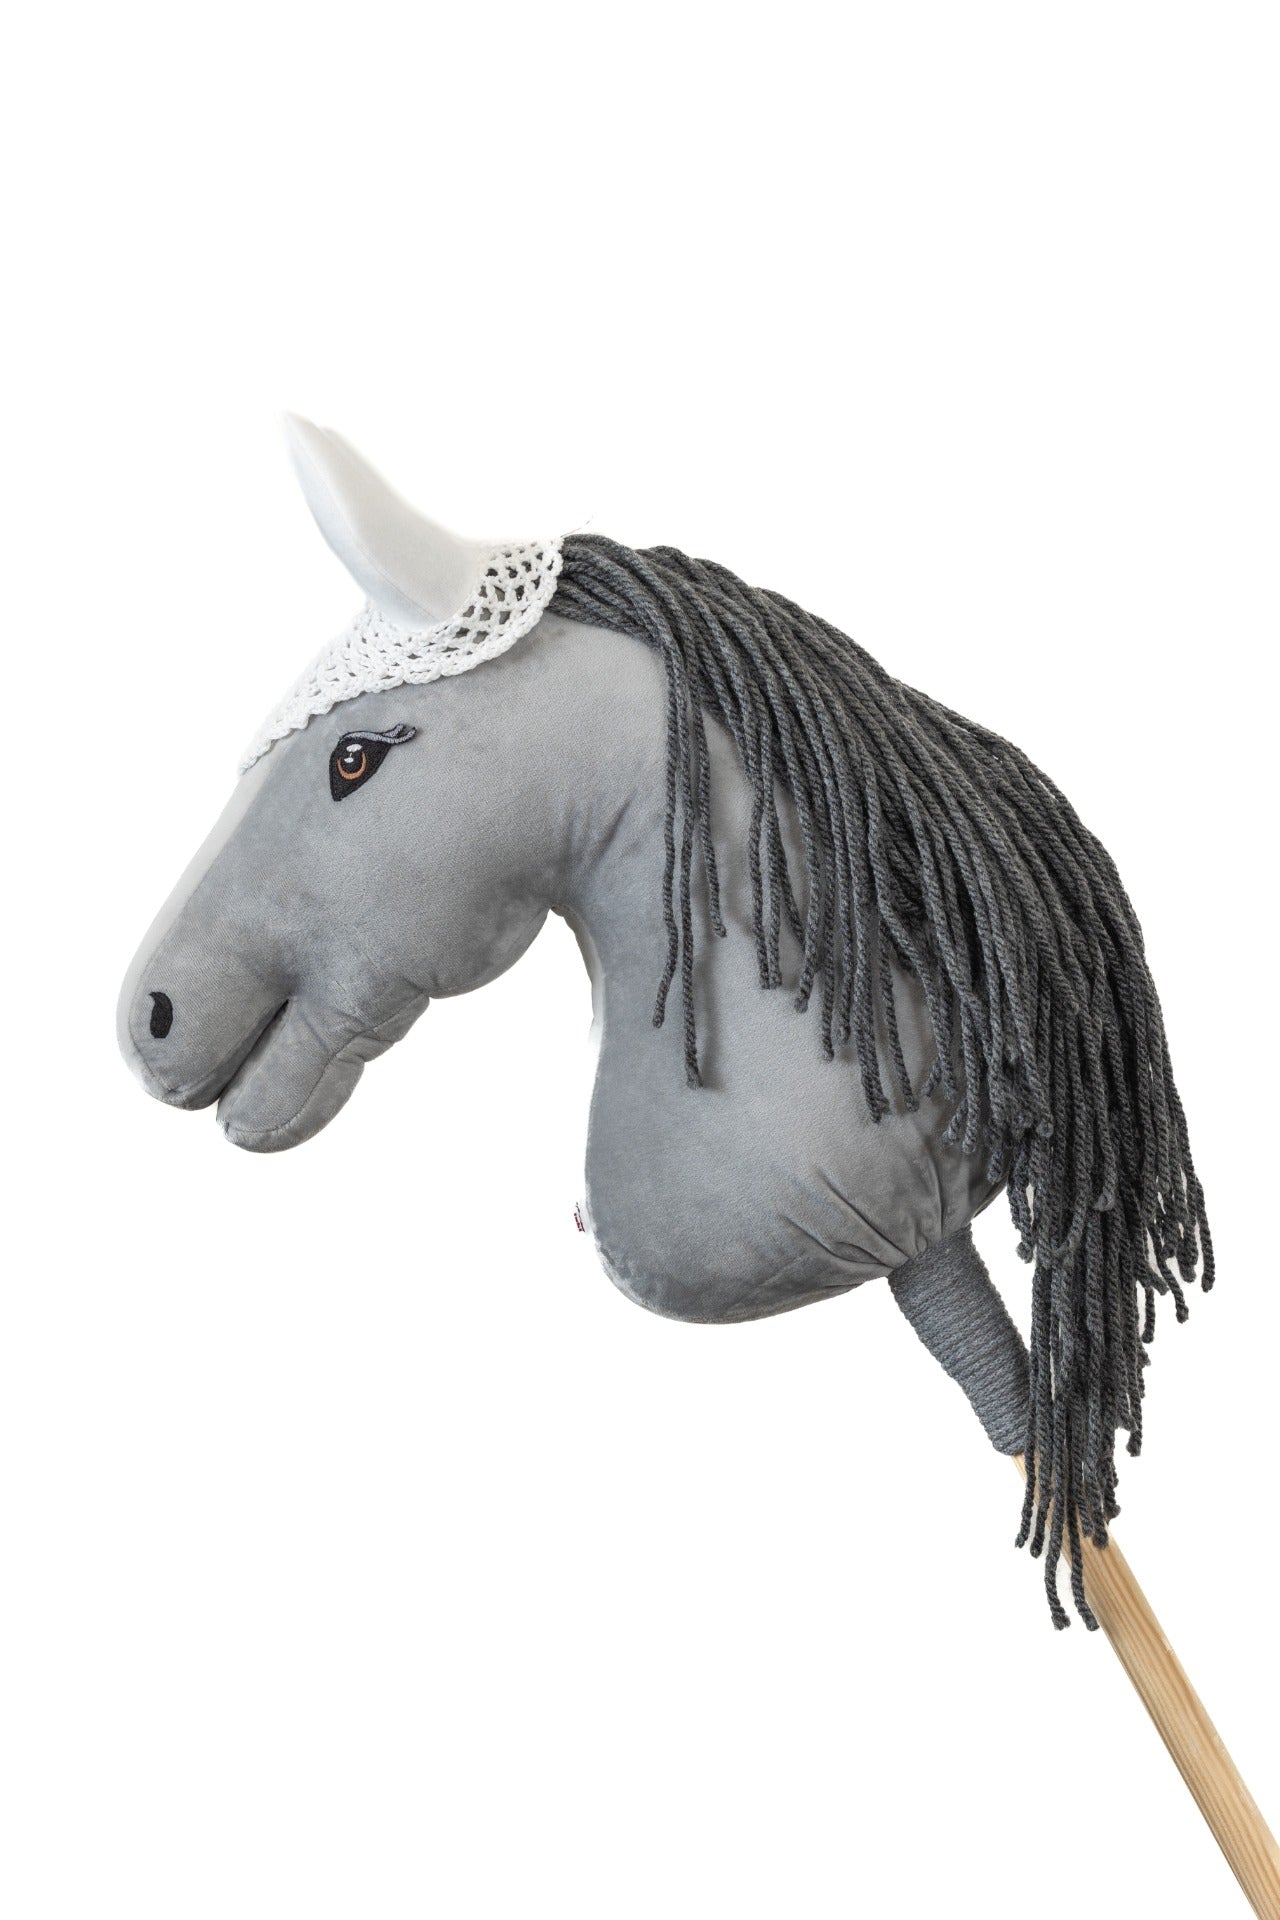 Ear net crocheted - White - Foal